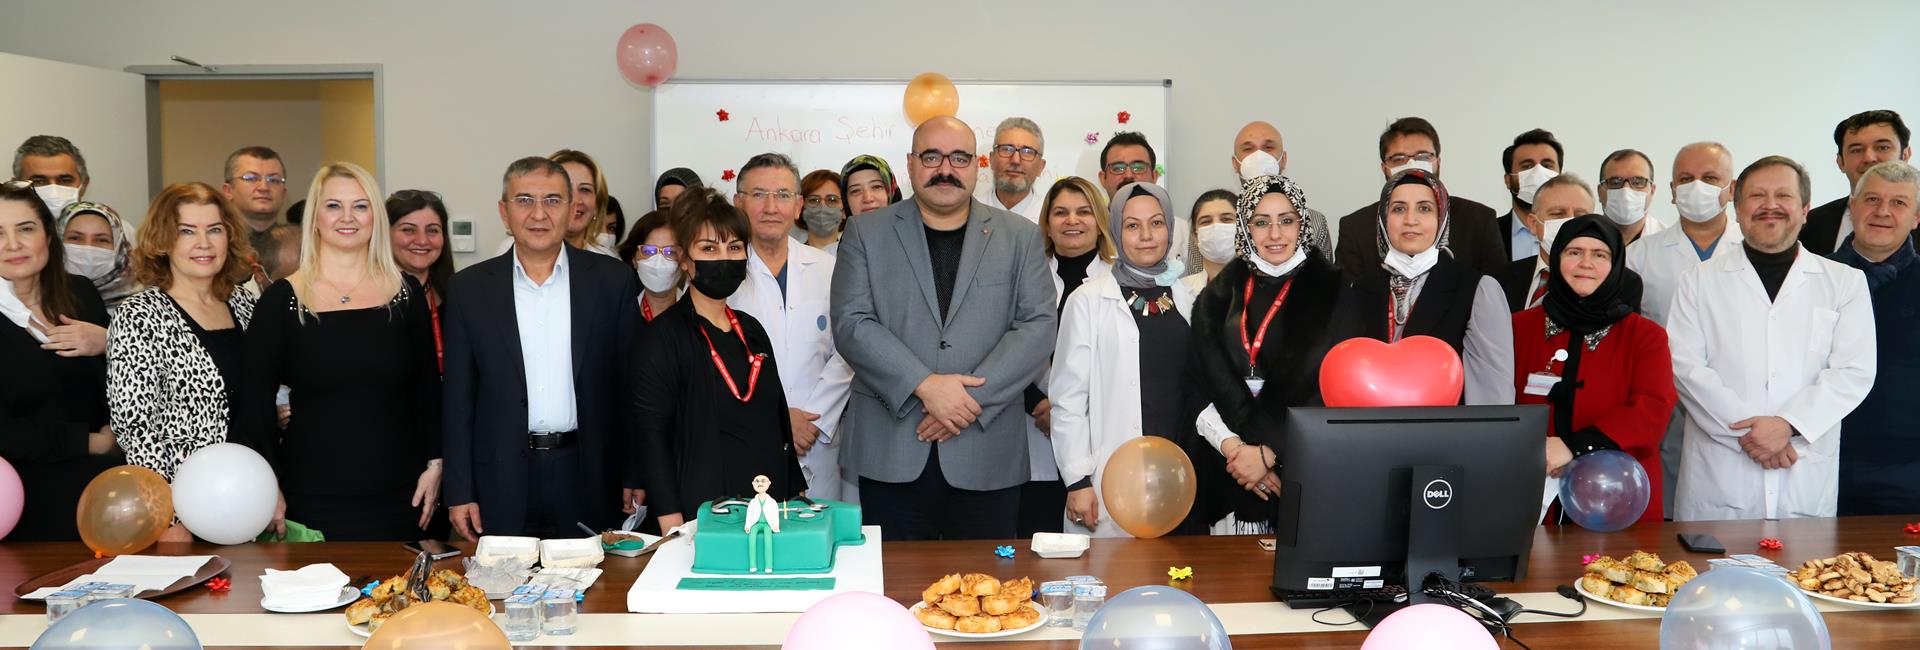 Ankara Şehir Hastanesi Ailesi kısıtlı ve samimi bir toplantıda bir araya gelerek Koordinatör Başhekimleri Dr. Öğr. Üyesi Aziz Ahmet Surel’e sürpriz yaptılar ve doğum gününü kutladılar.